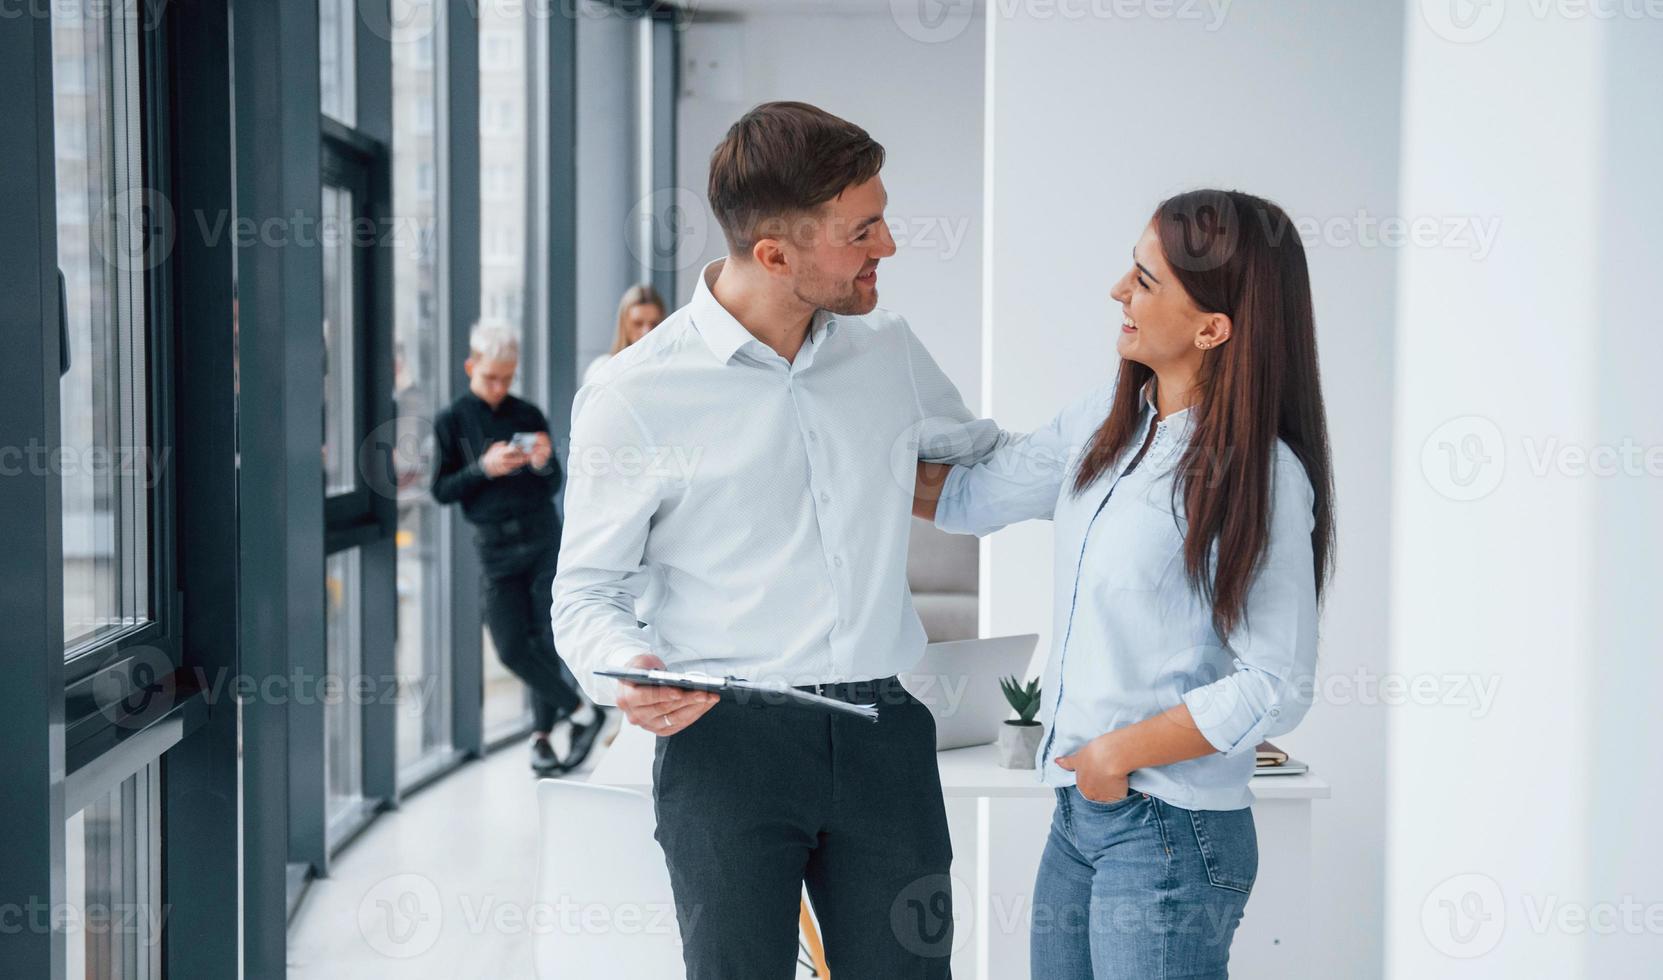 mujer y hombre hablando de documentos frente a un joven equipo exitoso que trabaja y se comunica juntos en el interior de la oficina foto